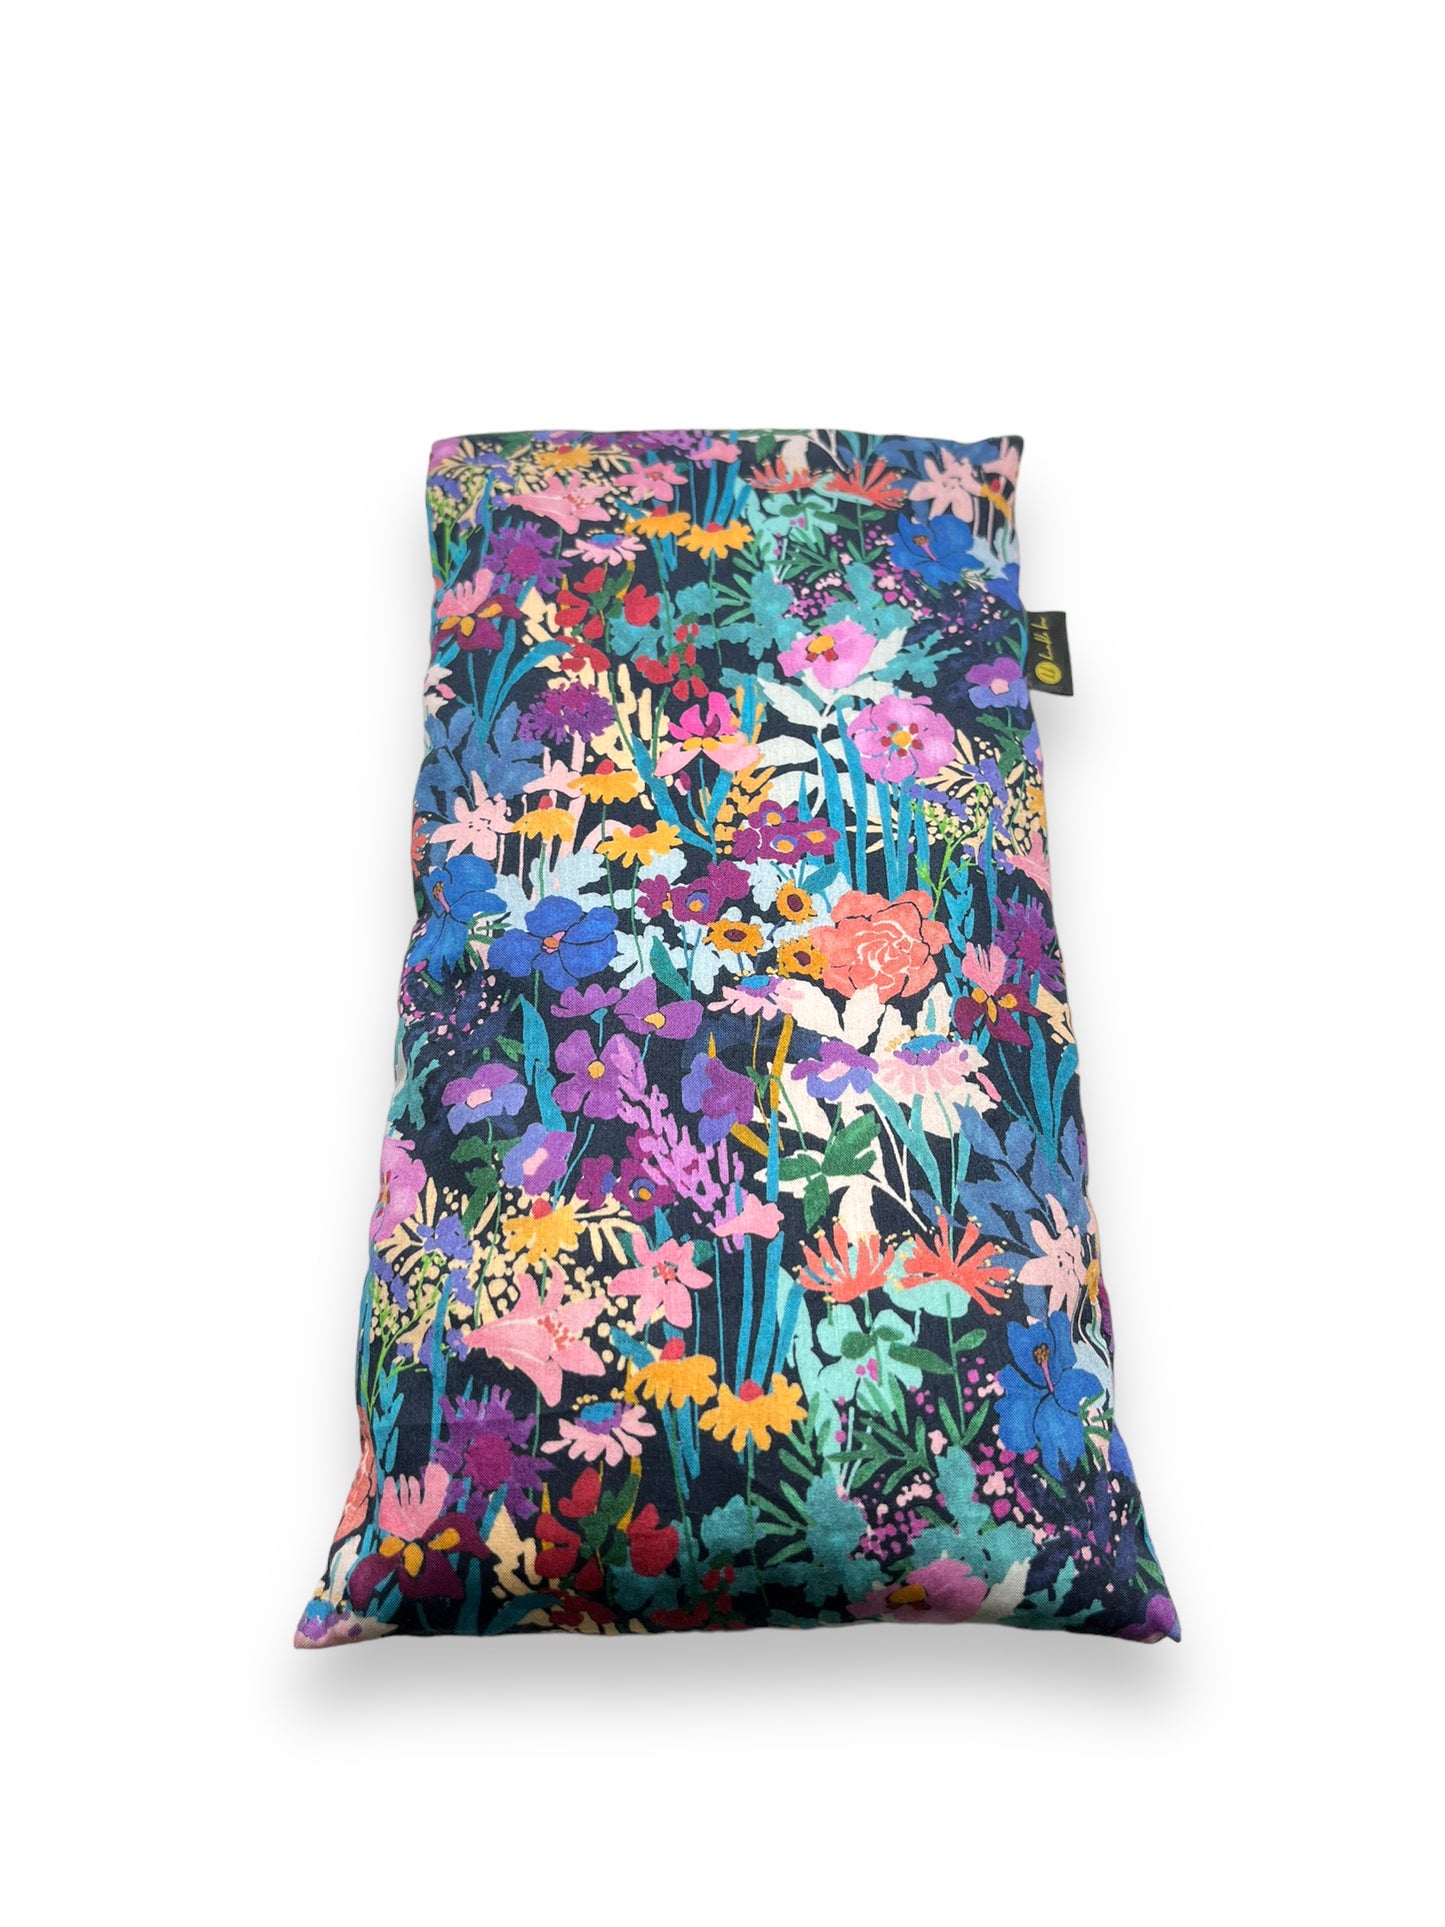 Lavender Eye Pillow - Liberty Wildflower Meadow